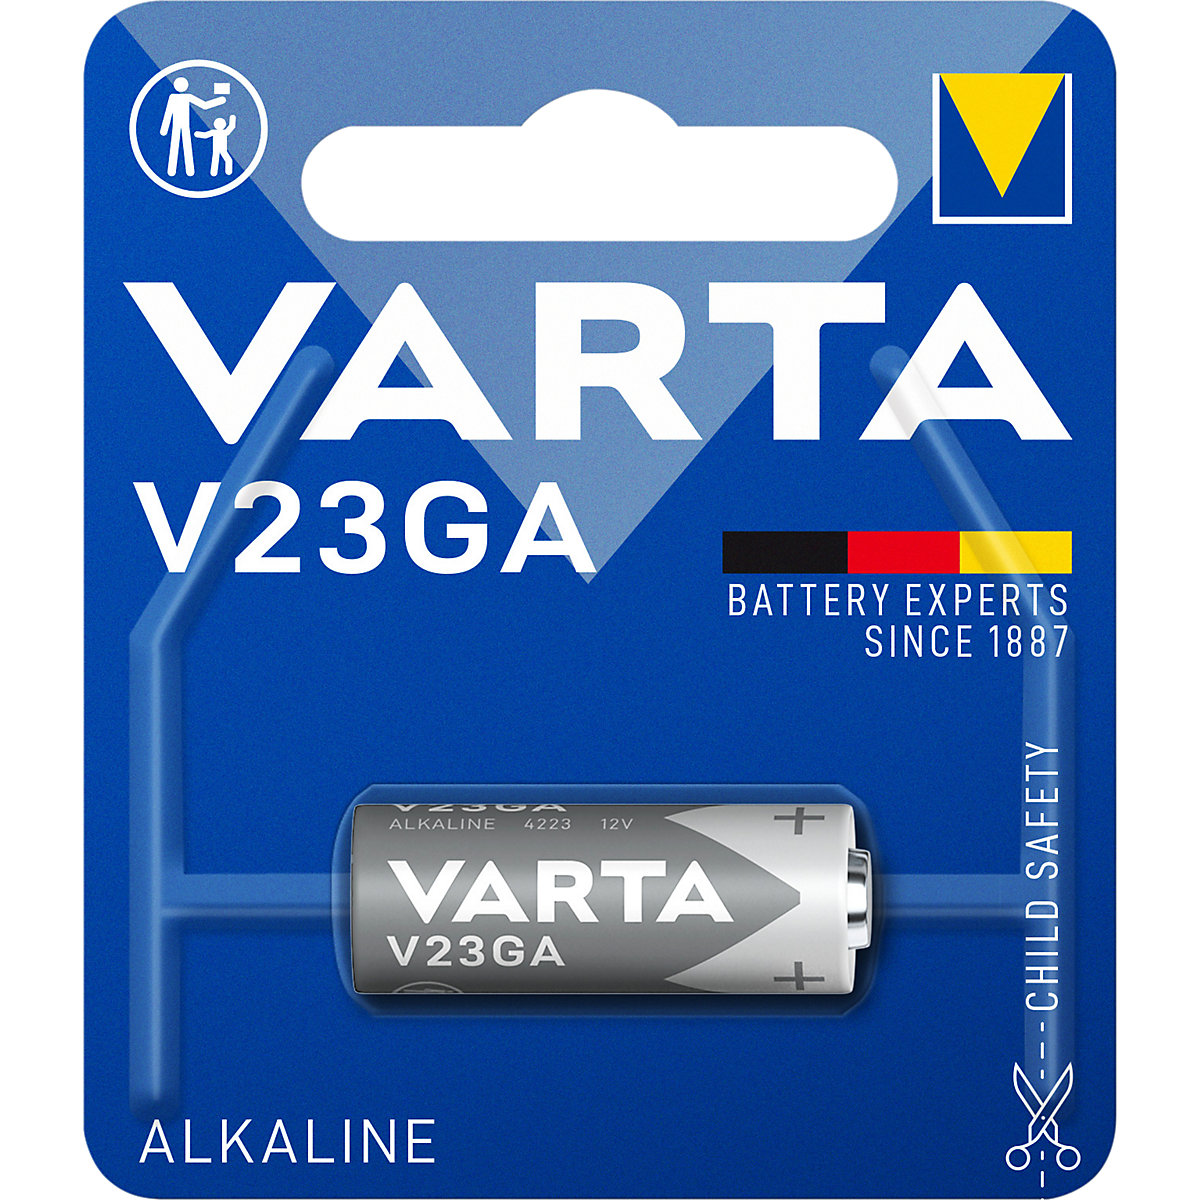 Batería especial ALKALINE - VARTA